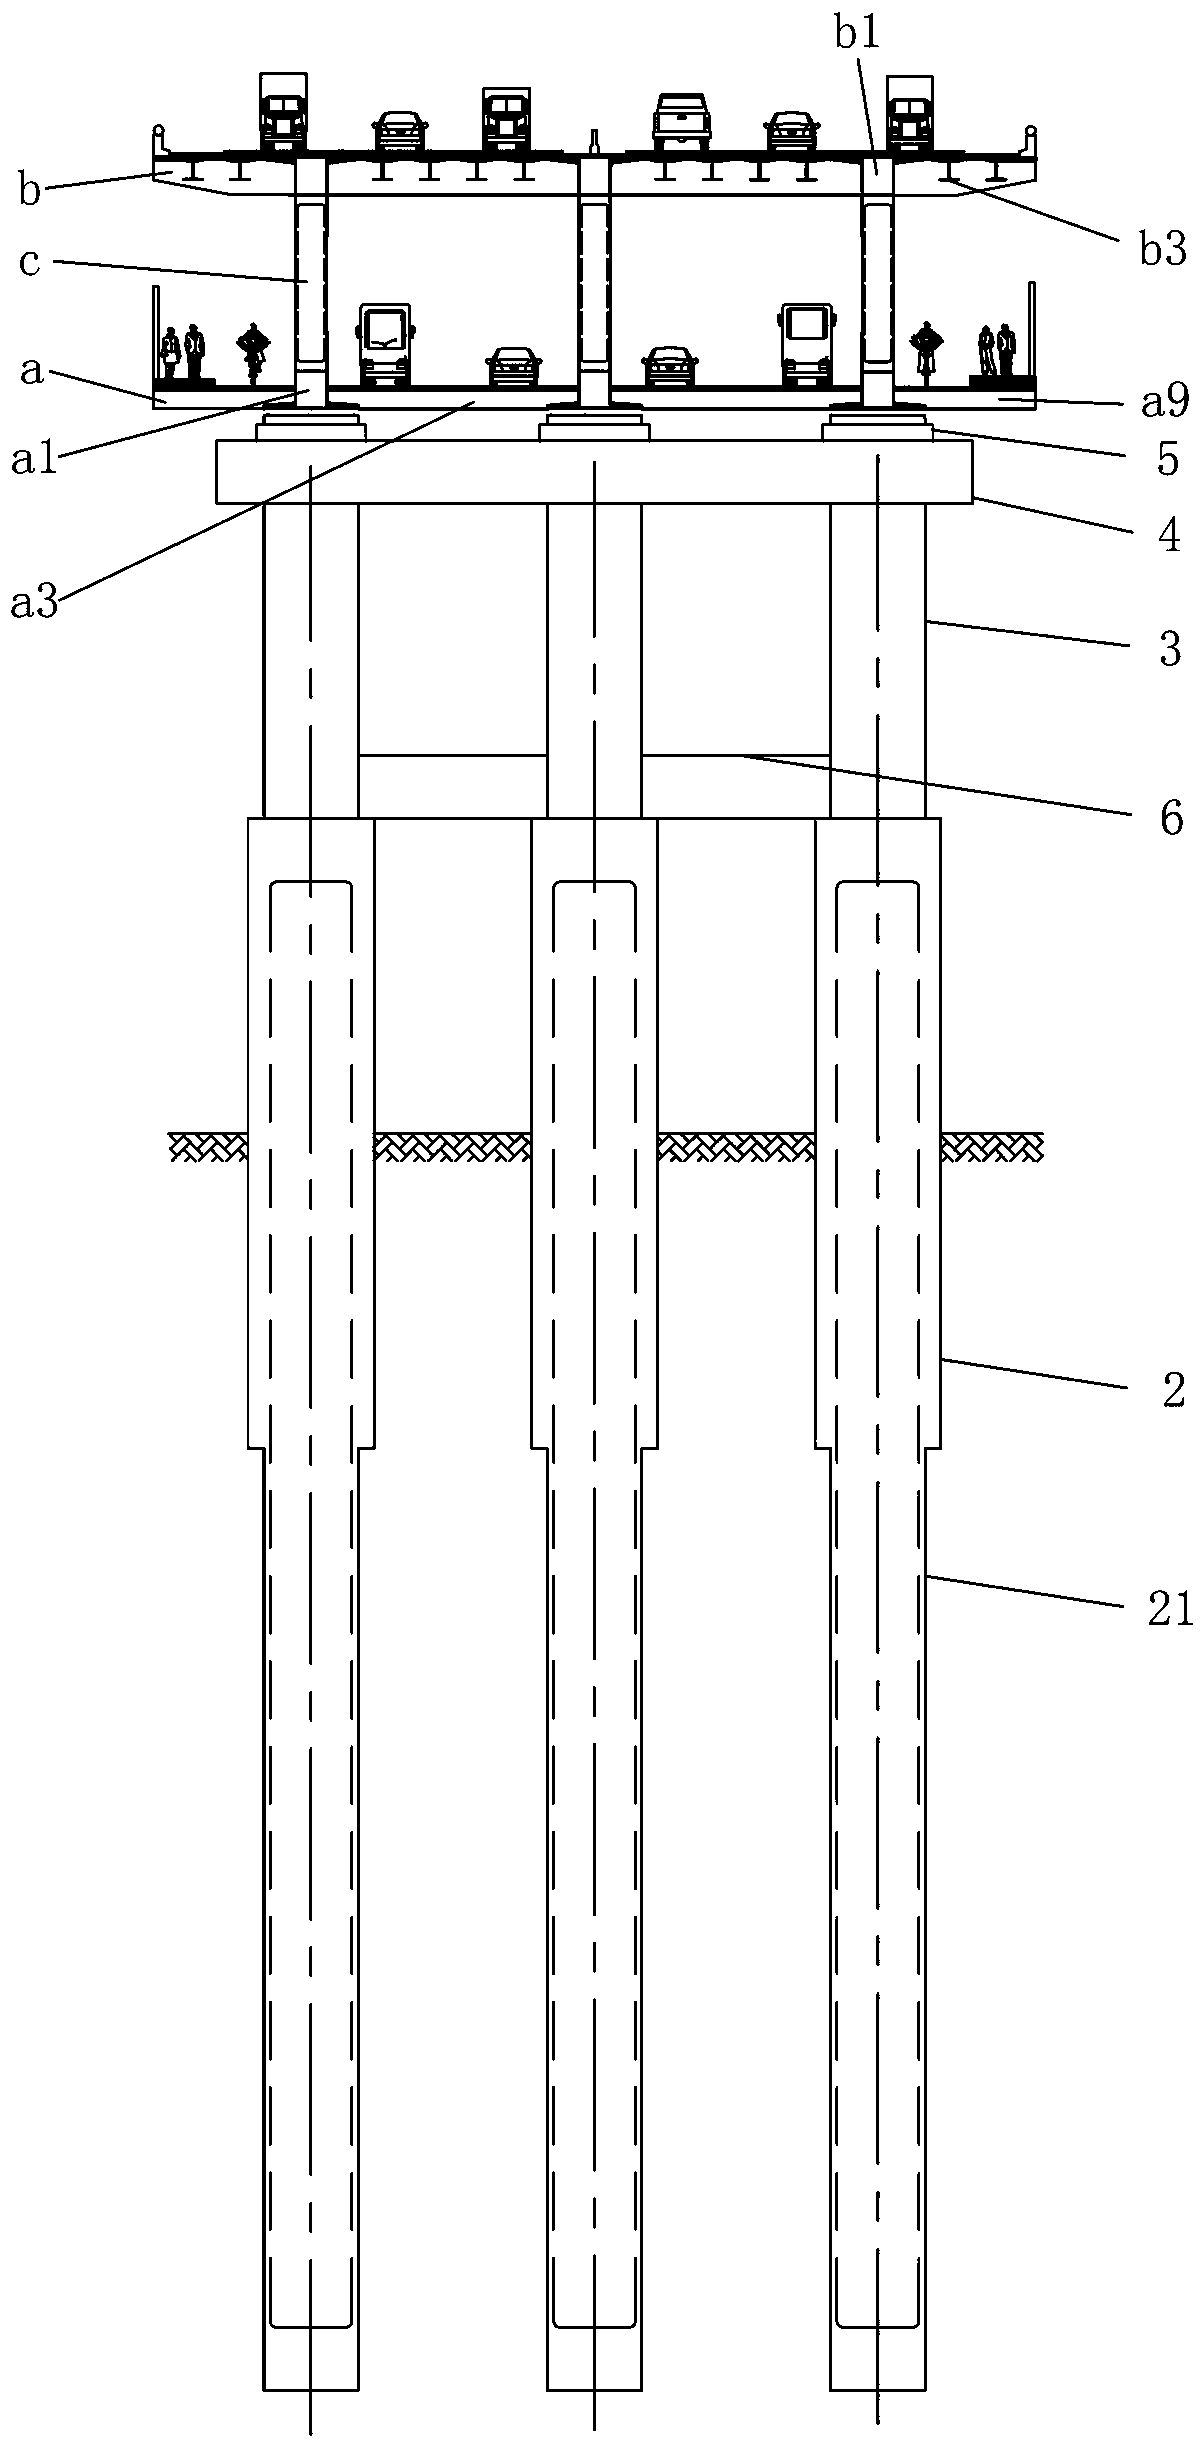 RPC steel joist combined bridge floor and continuous beam bridge